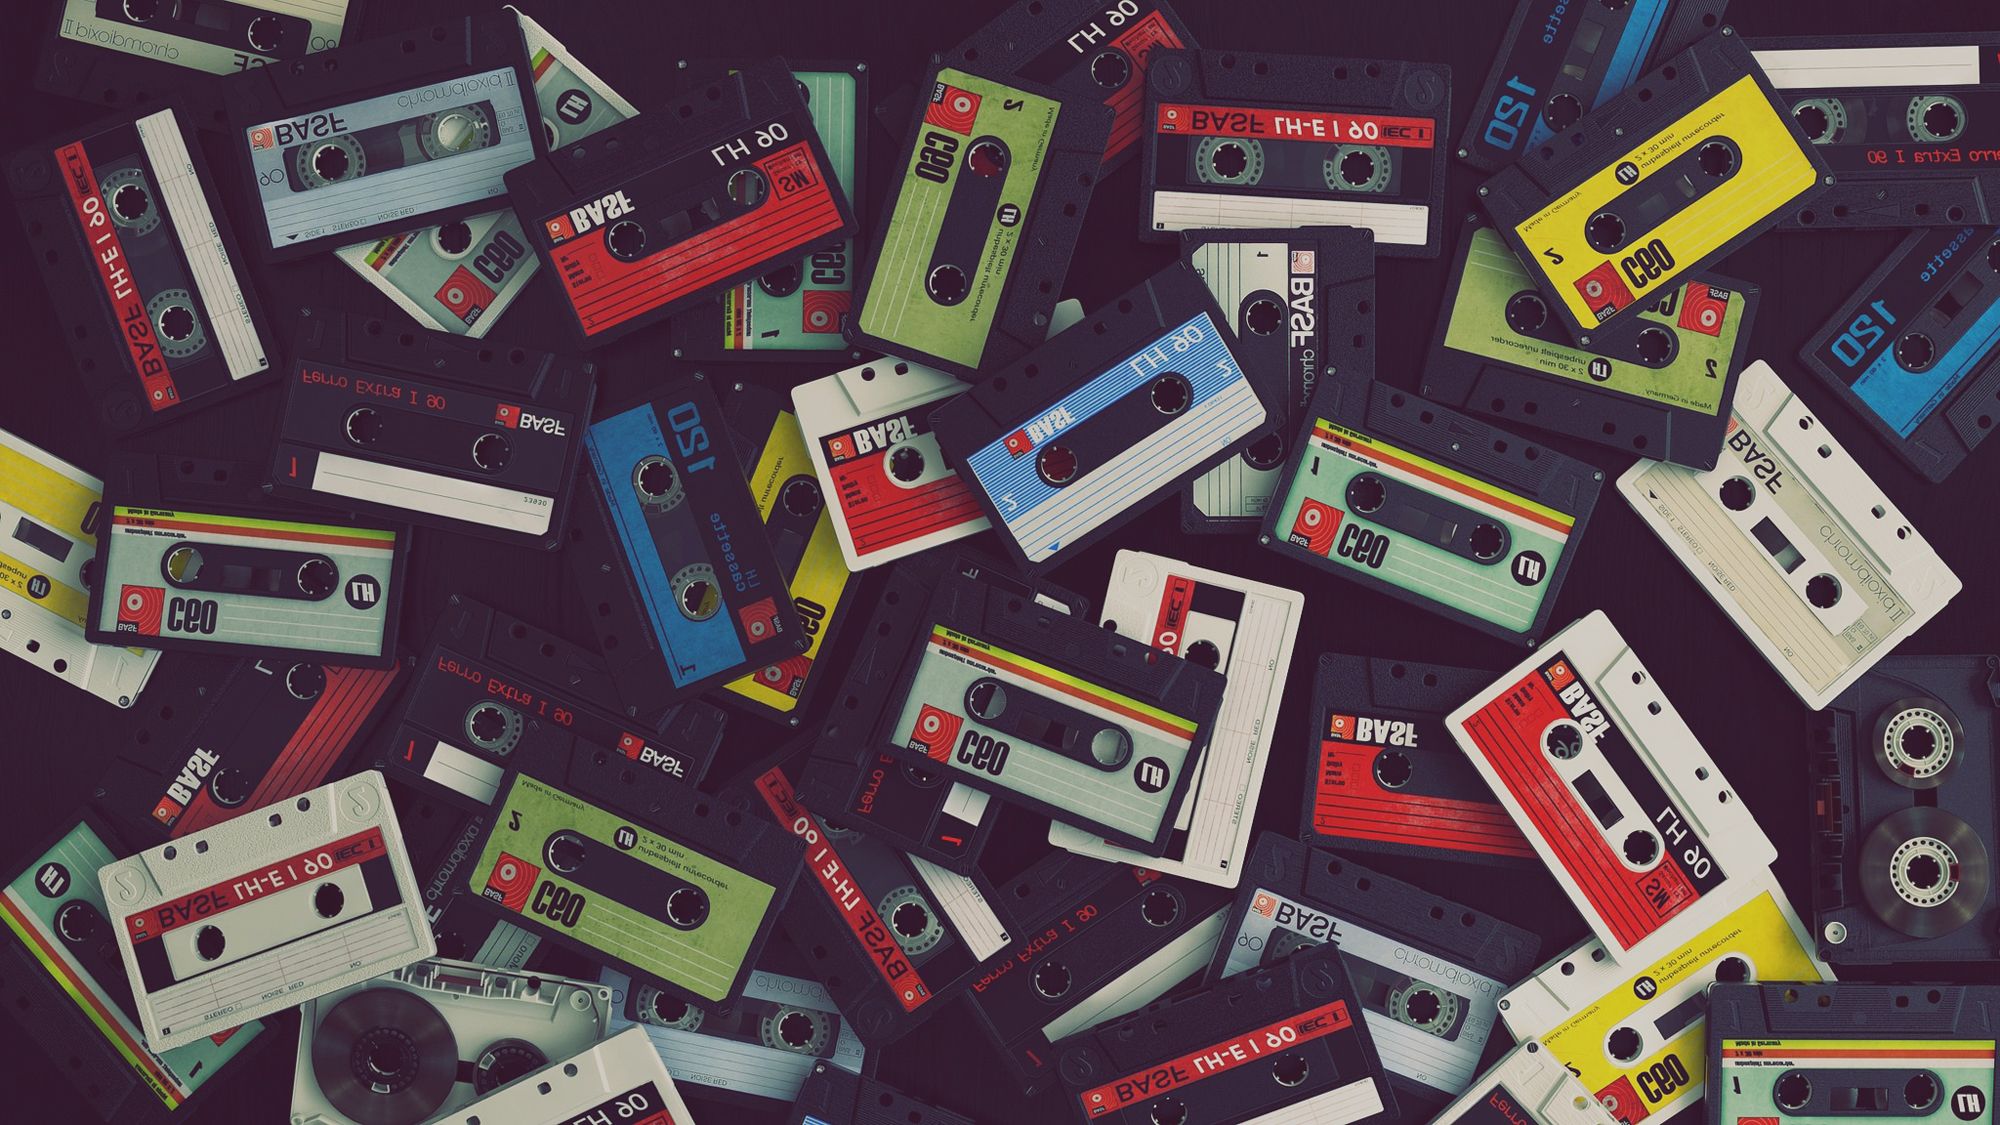 Cassette Tape Wallpaper. Cassette Wallpaper, Cassette Tape Wallpaper and Cassette iPhone Wallpaper